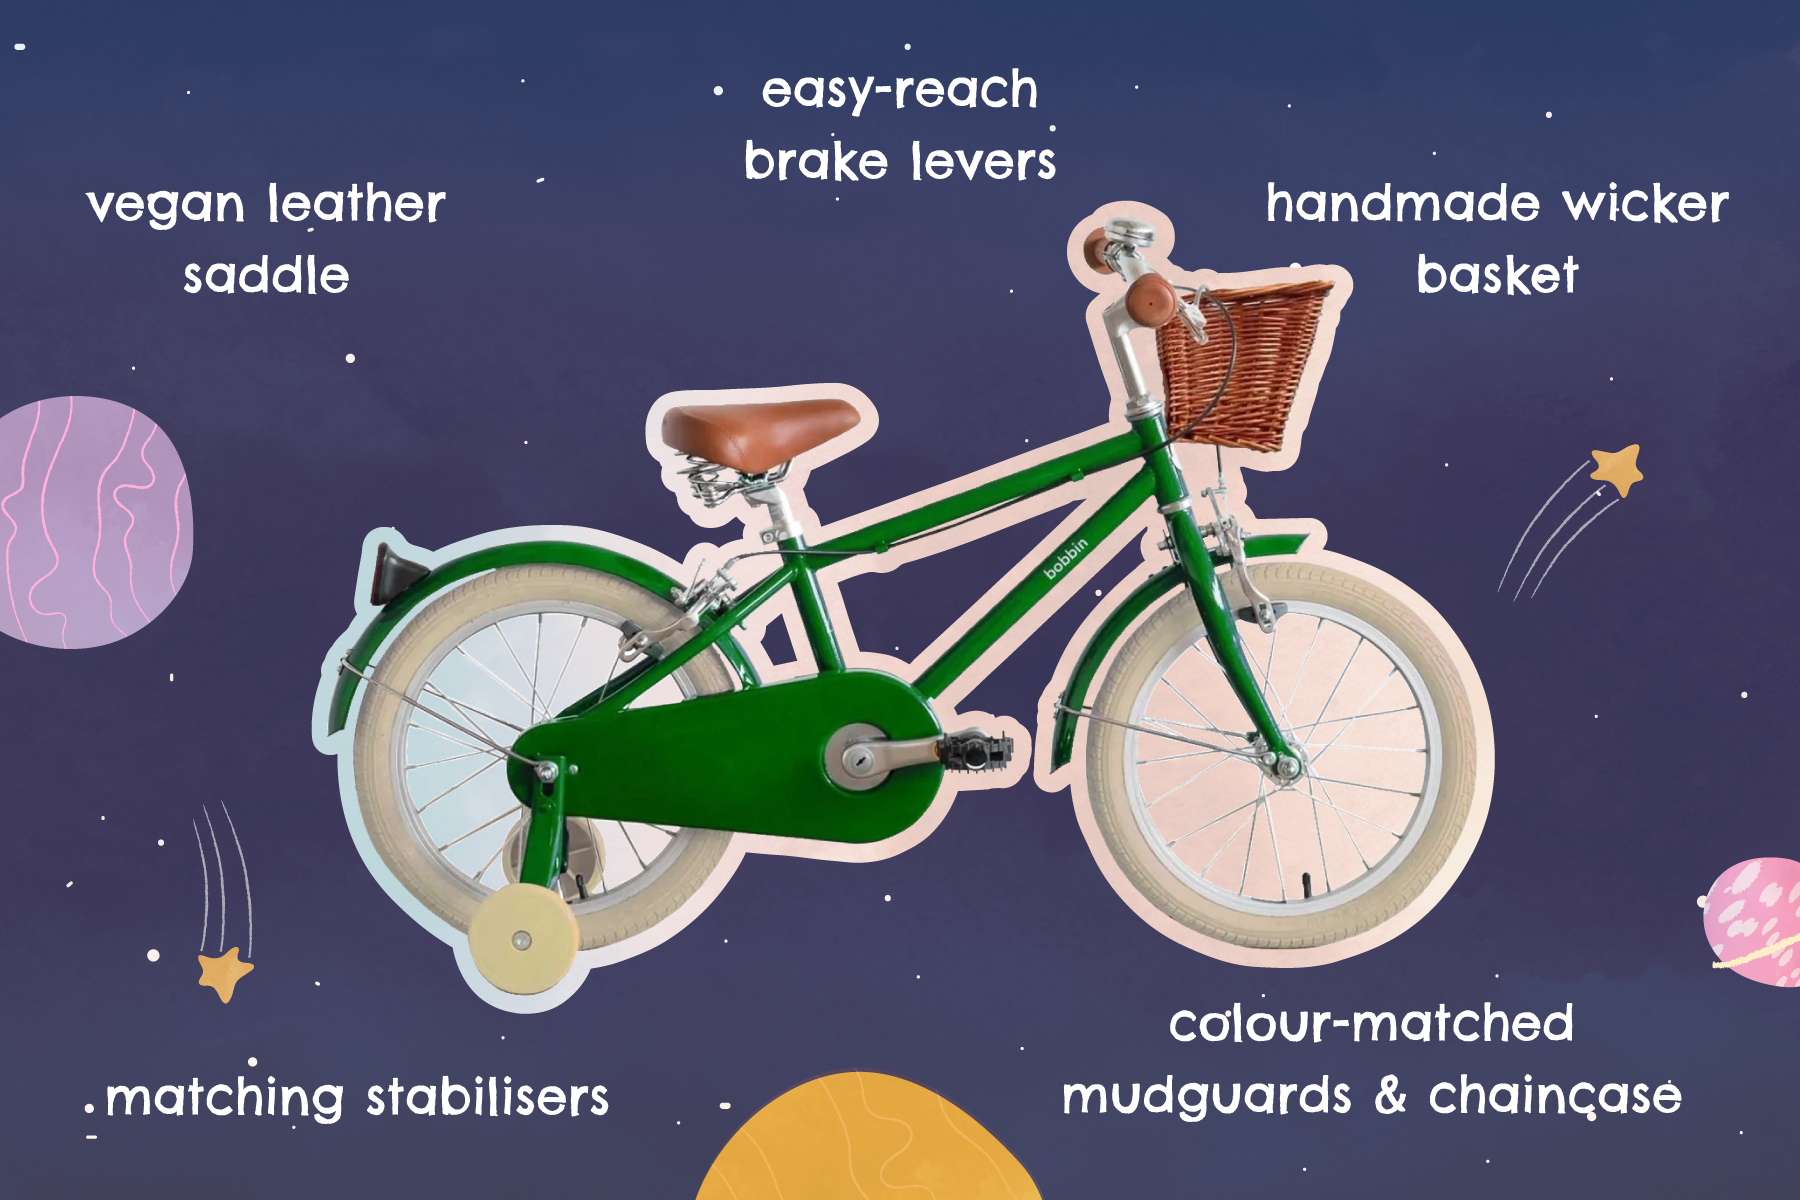 Bicicleta didática Moonbug 16" para crianças dos 4 aos 6 anos